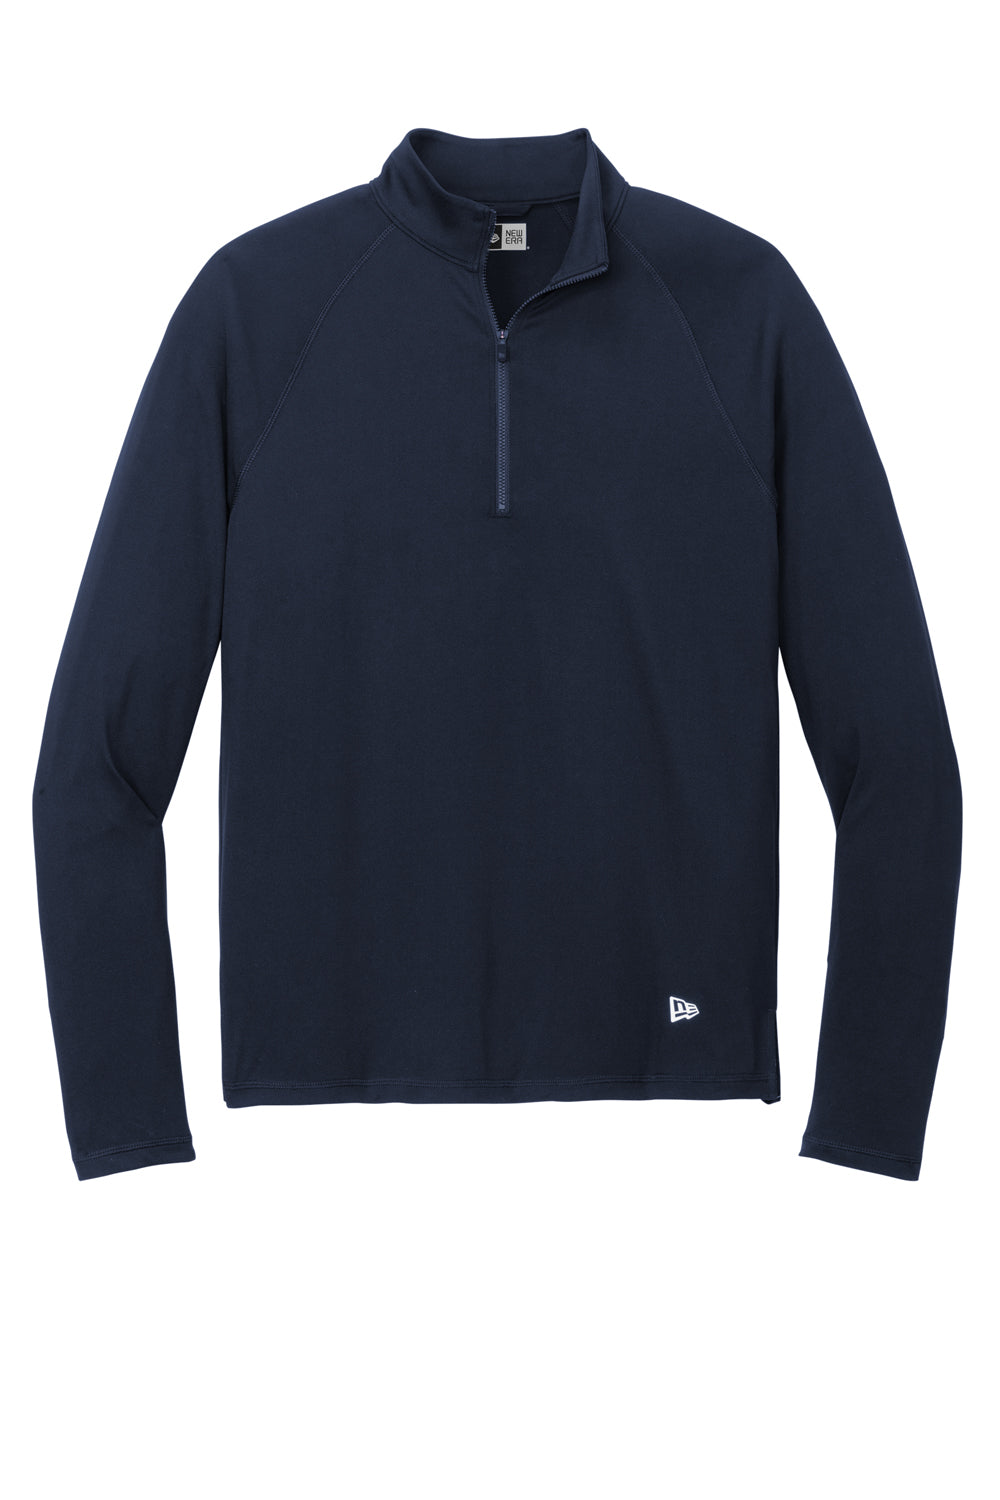 New Era Mens Power 1/4 Zip Sweatshirt True Navy Blue Flat Front